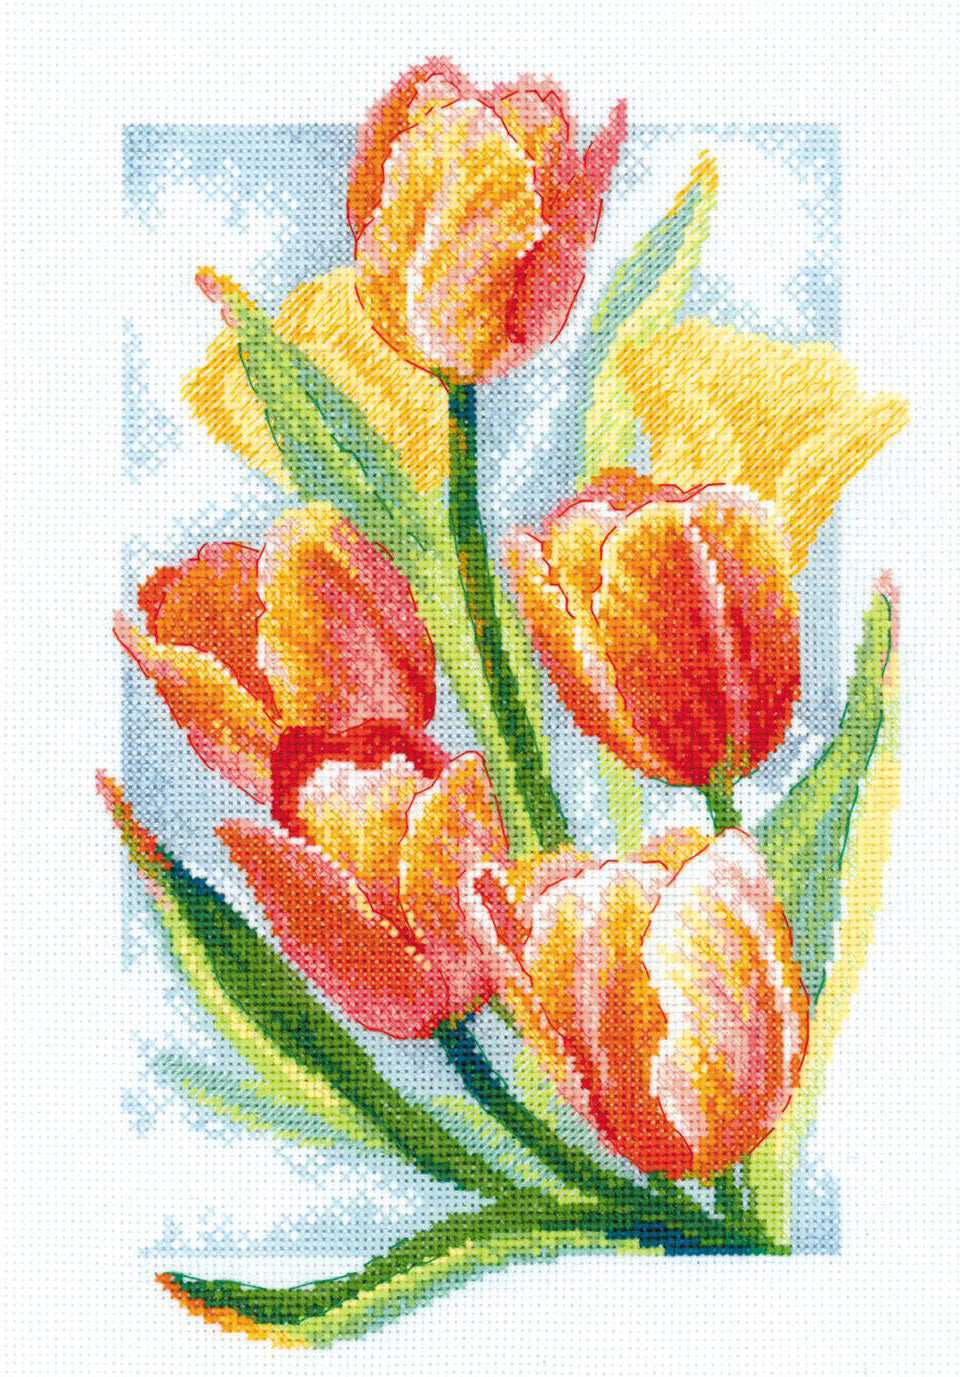 Kit de Bordado de Punto de Cruz - "Spring Glow. Tulips" - Riolis 2191